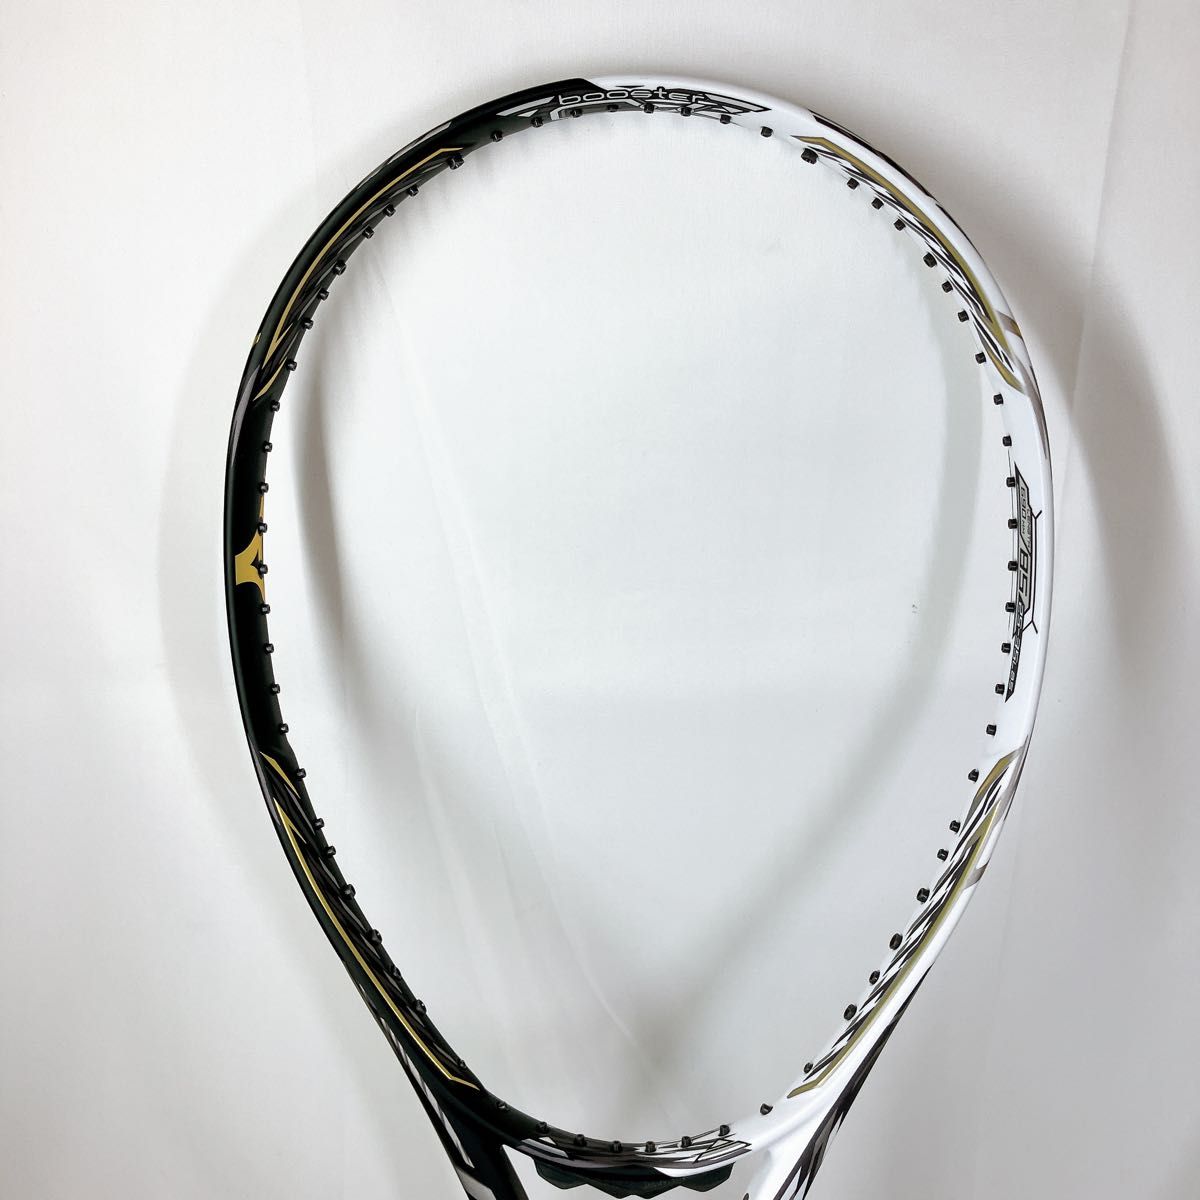 【未使用】DIOS PRO-X ミズノ テニスラケット AEROX FRAME mizuno スポーツ 軟式 ソフトテニス